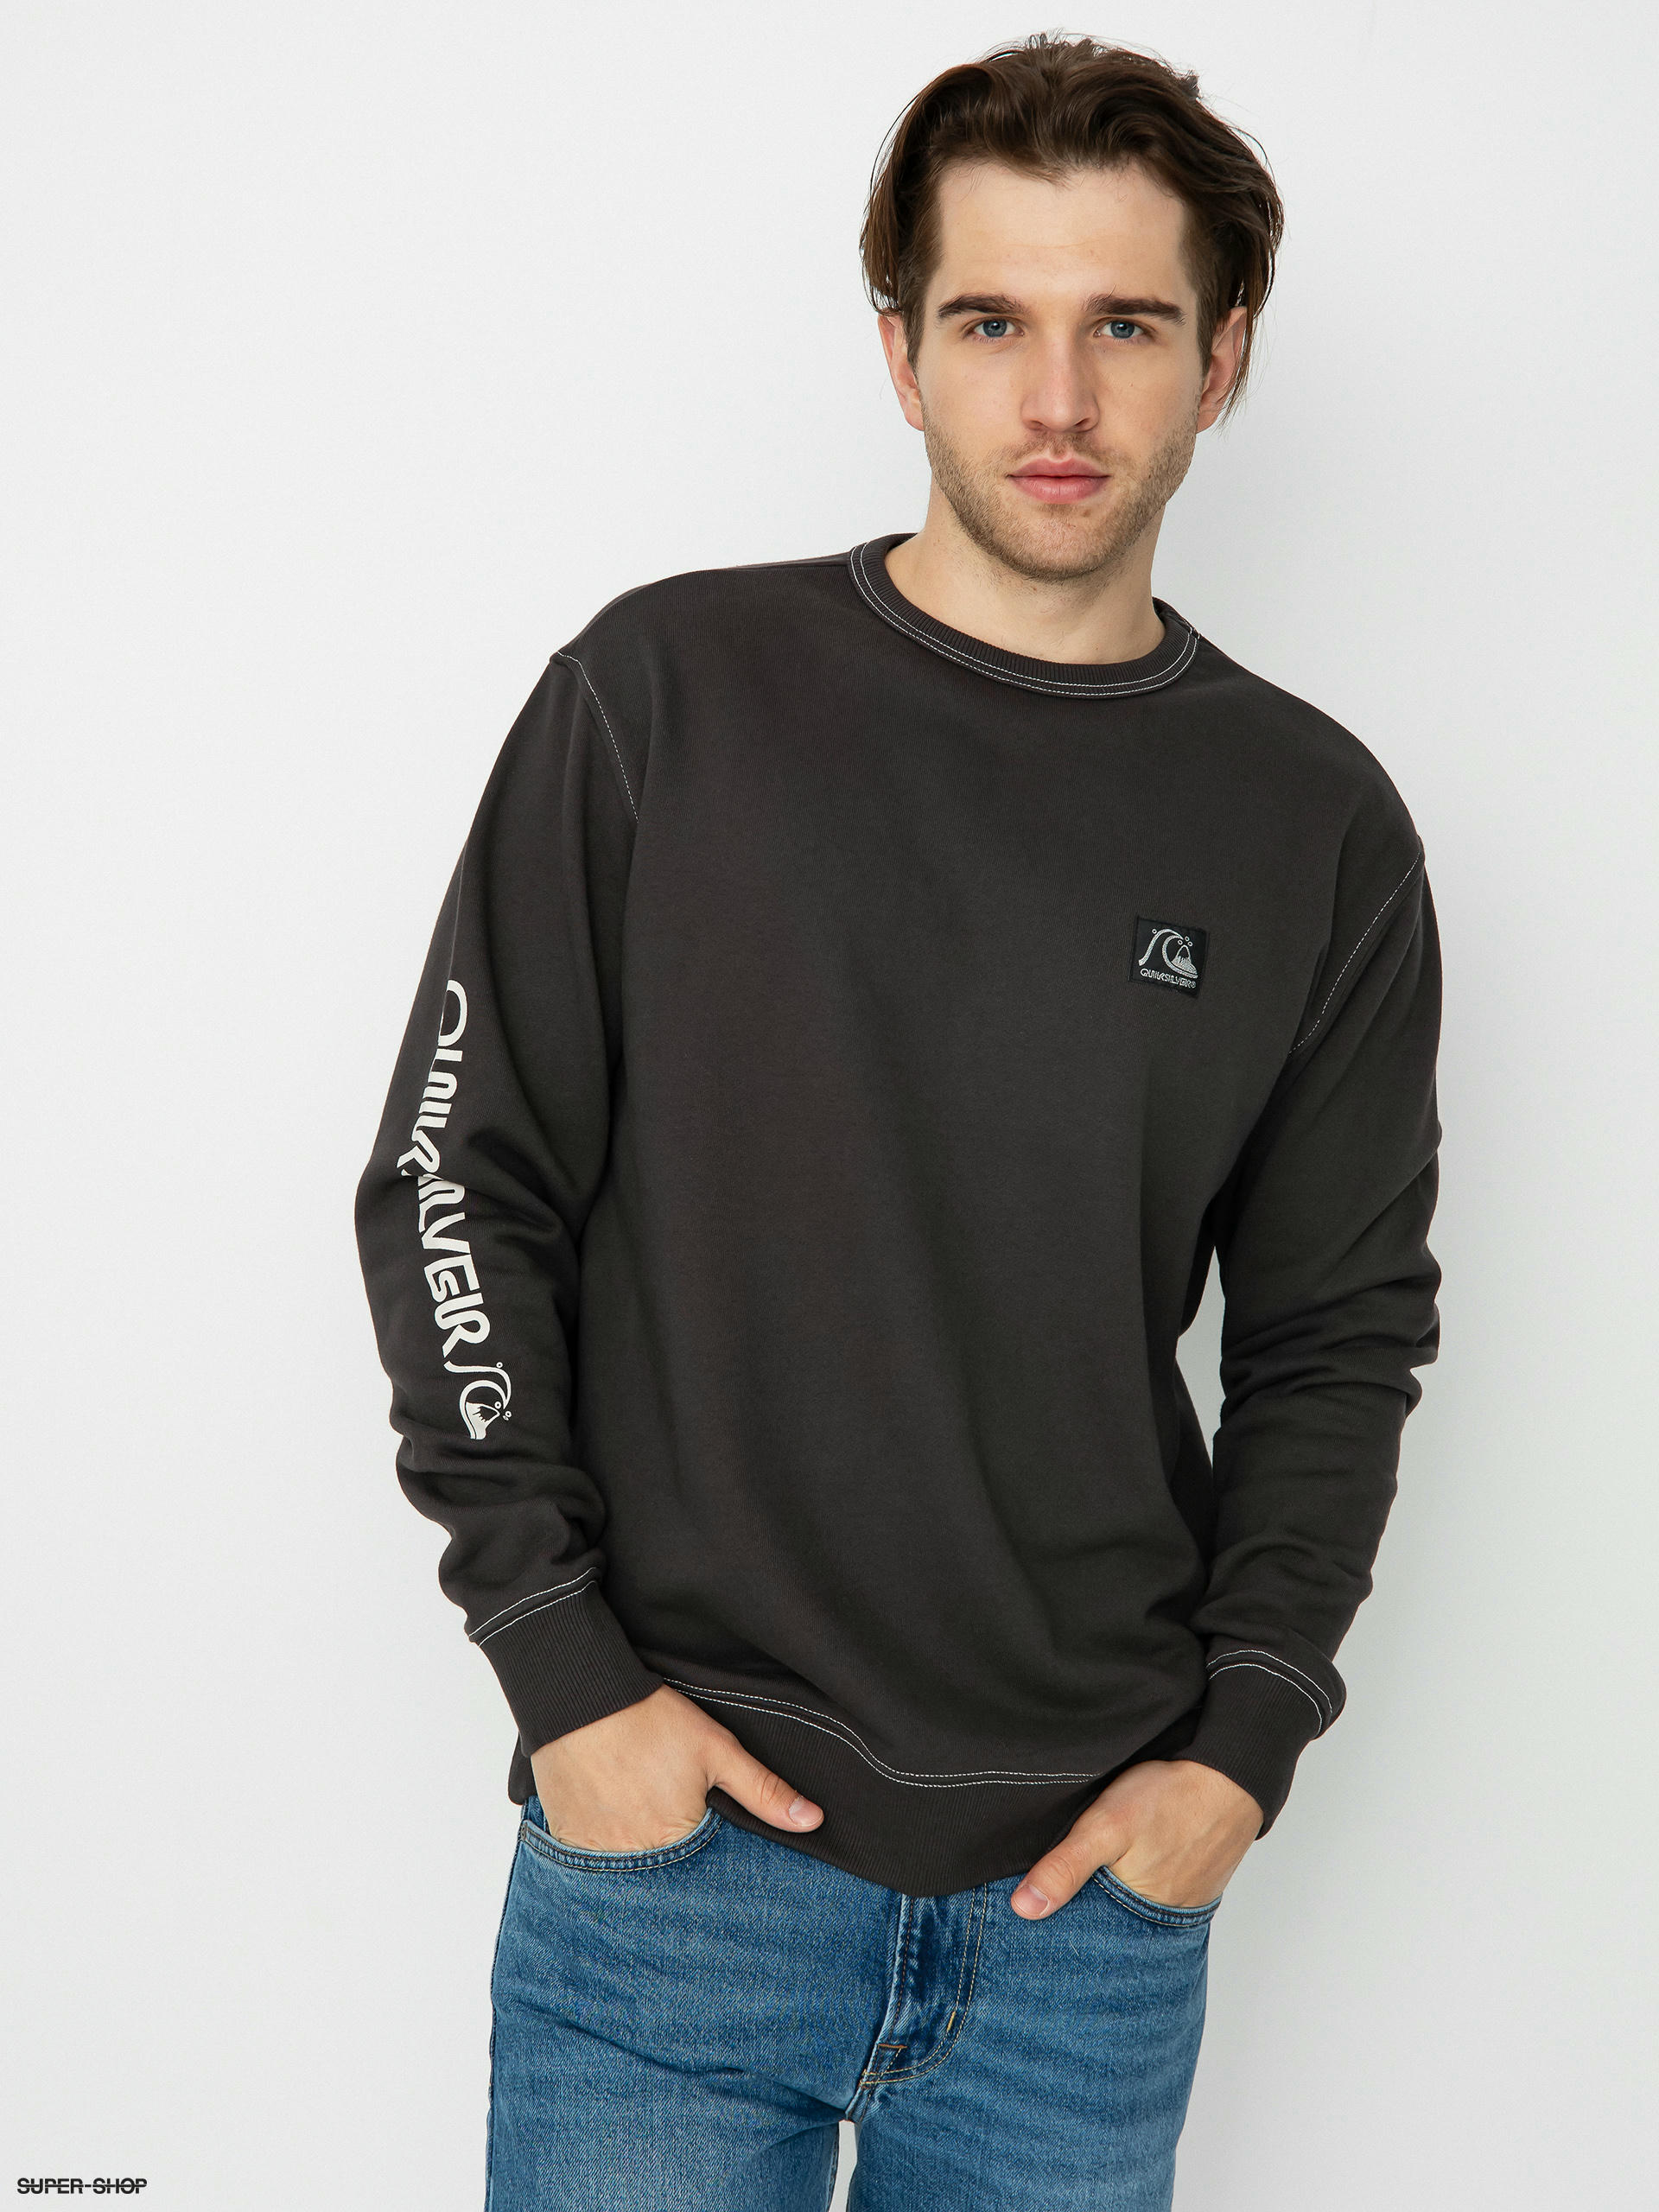 The Quiksilver (black) Original Sweatshirt